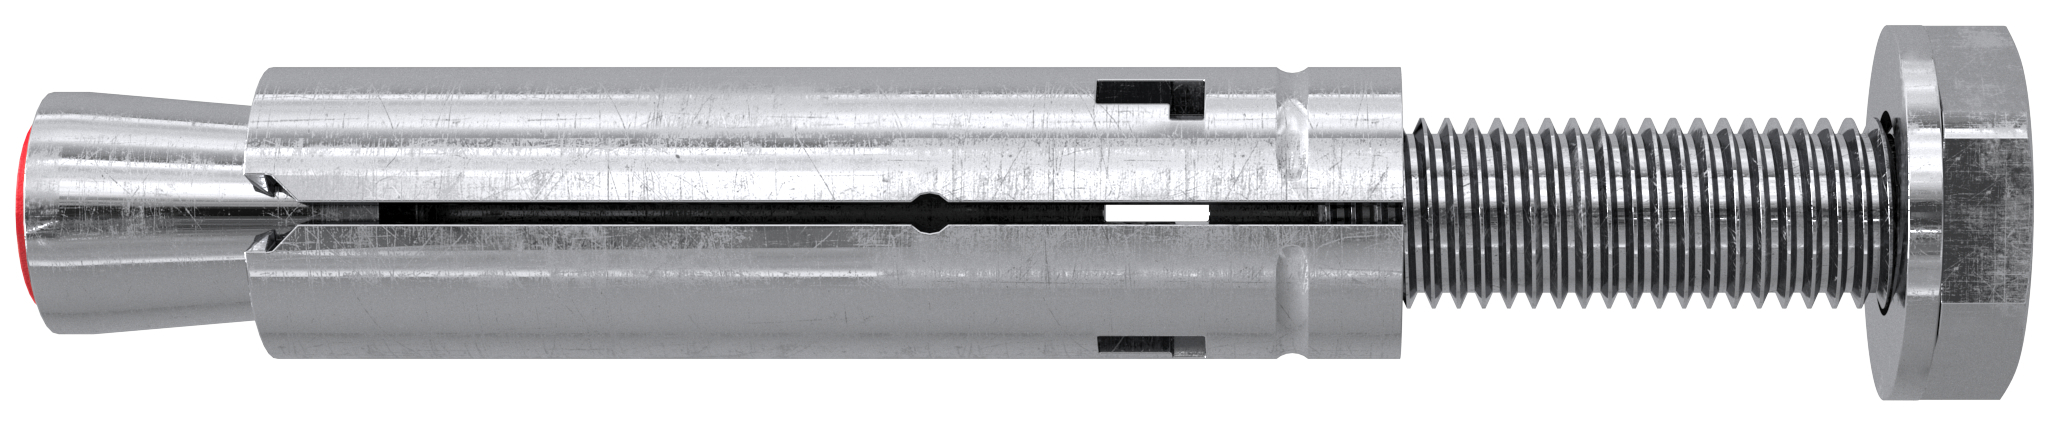 fischer Tasselli in acciaio TA M 8 S-10 (1 Pz.) L'ancorante filettato internamente, facile da installare, per fissaggi in calcestruzzo non fessurato. Versione con vite T.E. classe 8.8. fie993